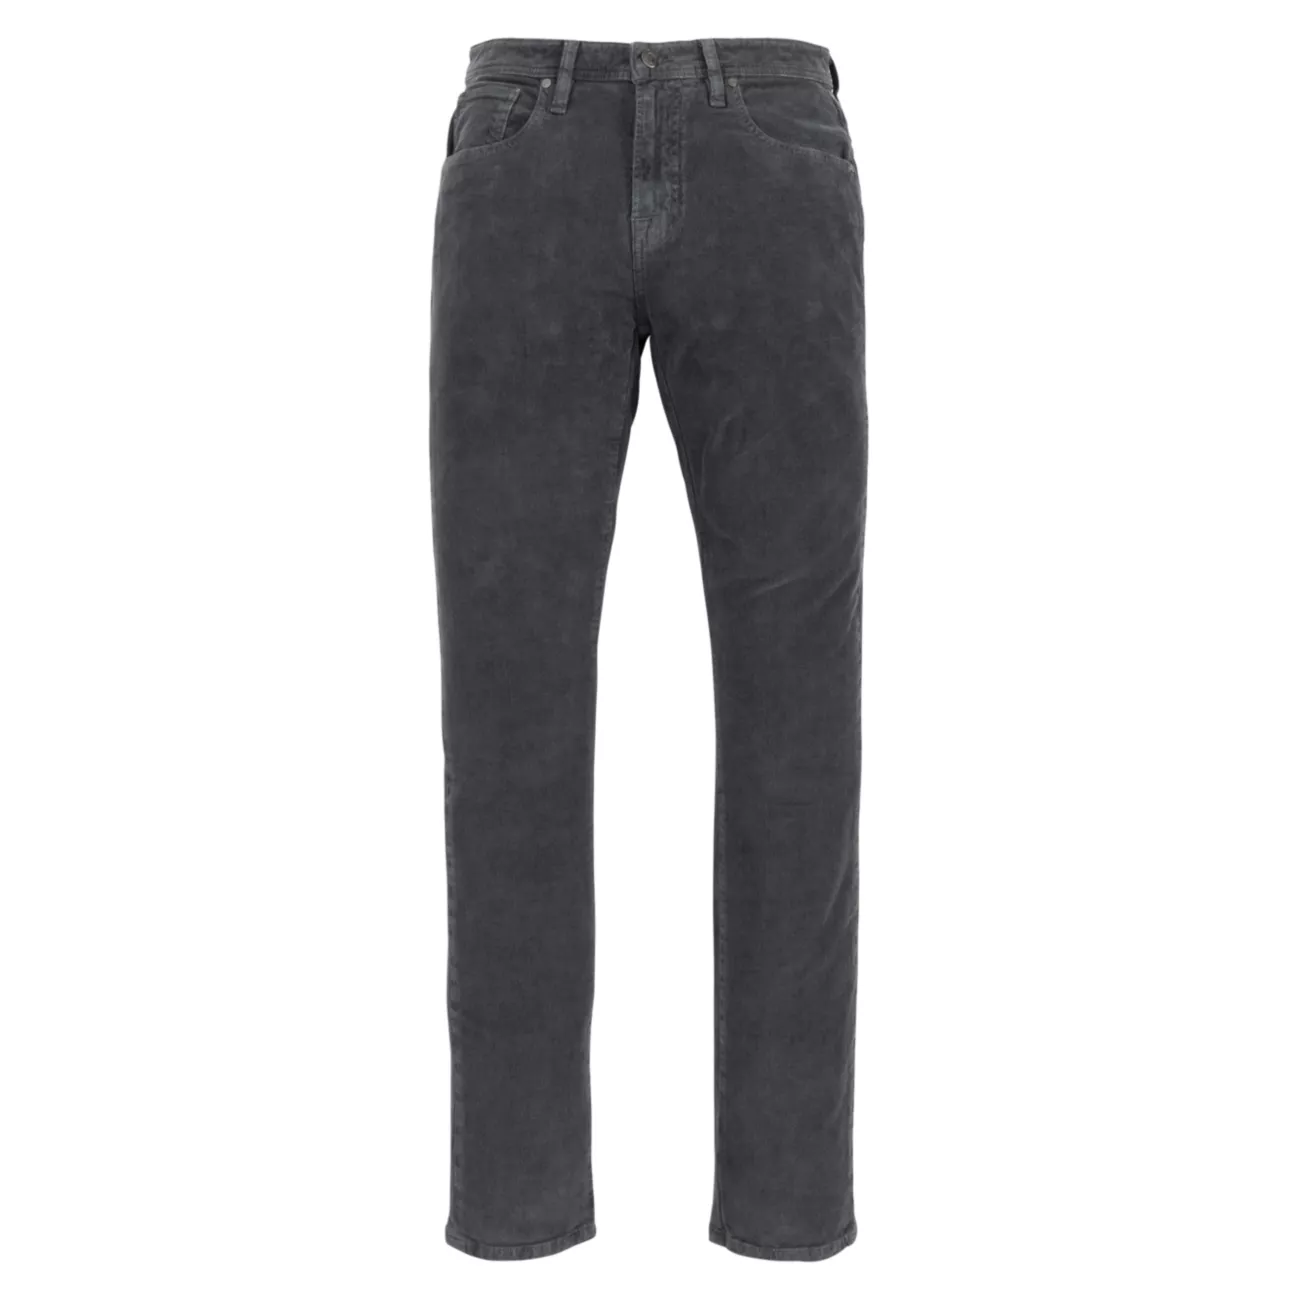 Вельветовые джинсы Cardif с пятью карманами Johnnie-O